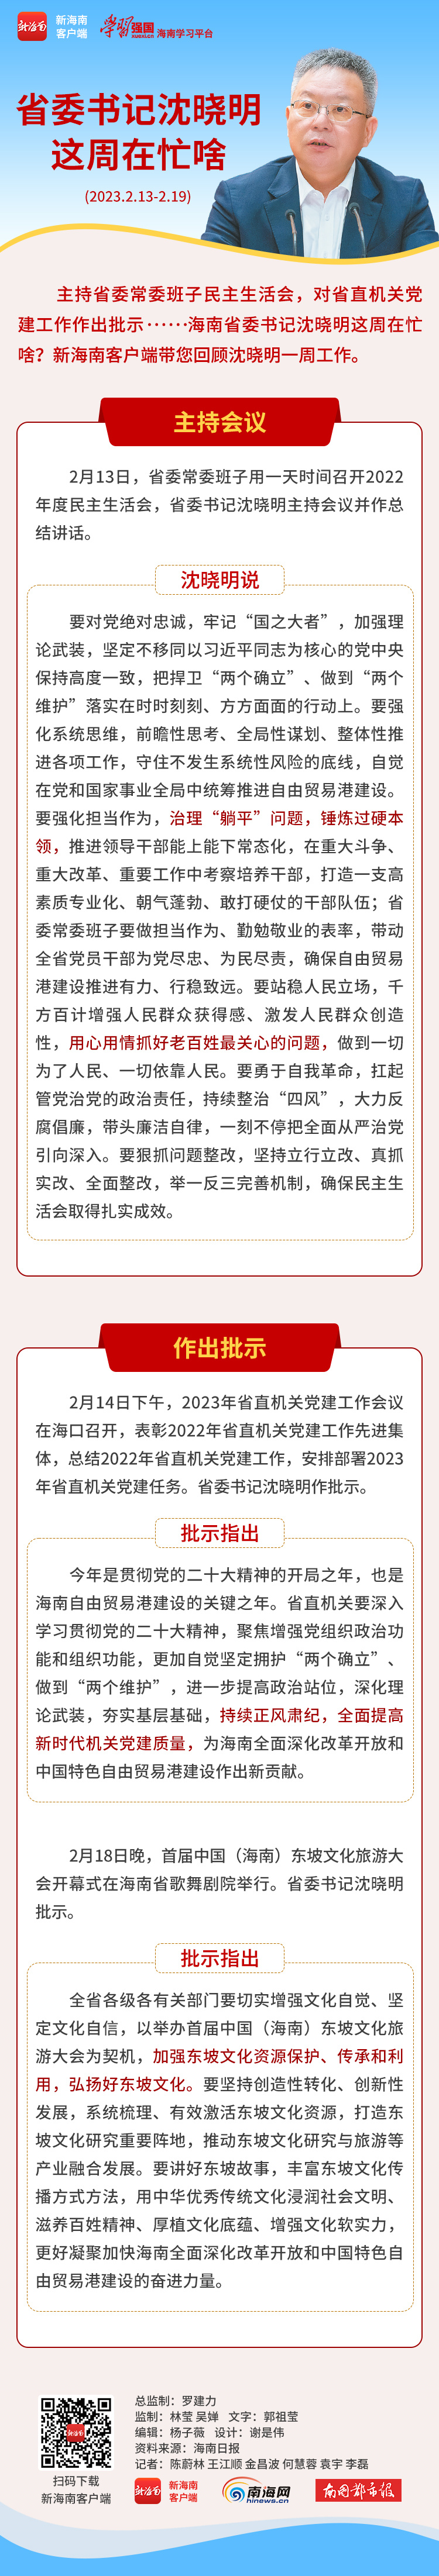 海南政情 | 省委书记沈晓明这周在忙啥？（2月13日至2月19日）